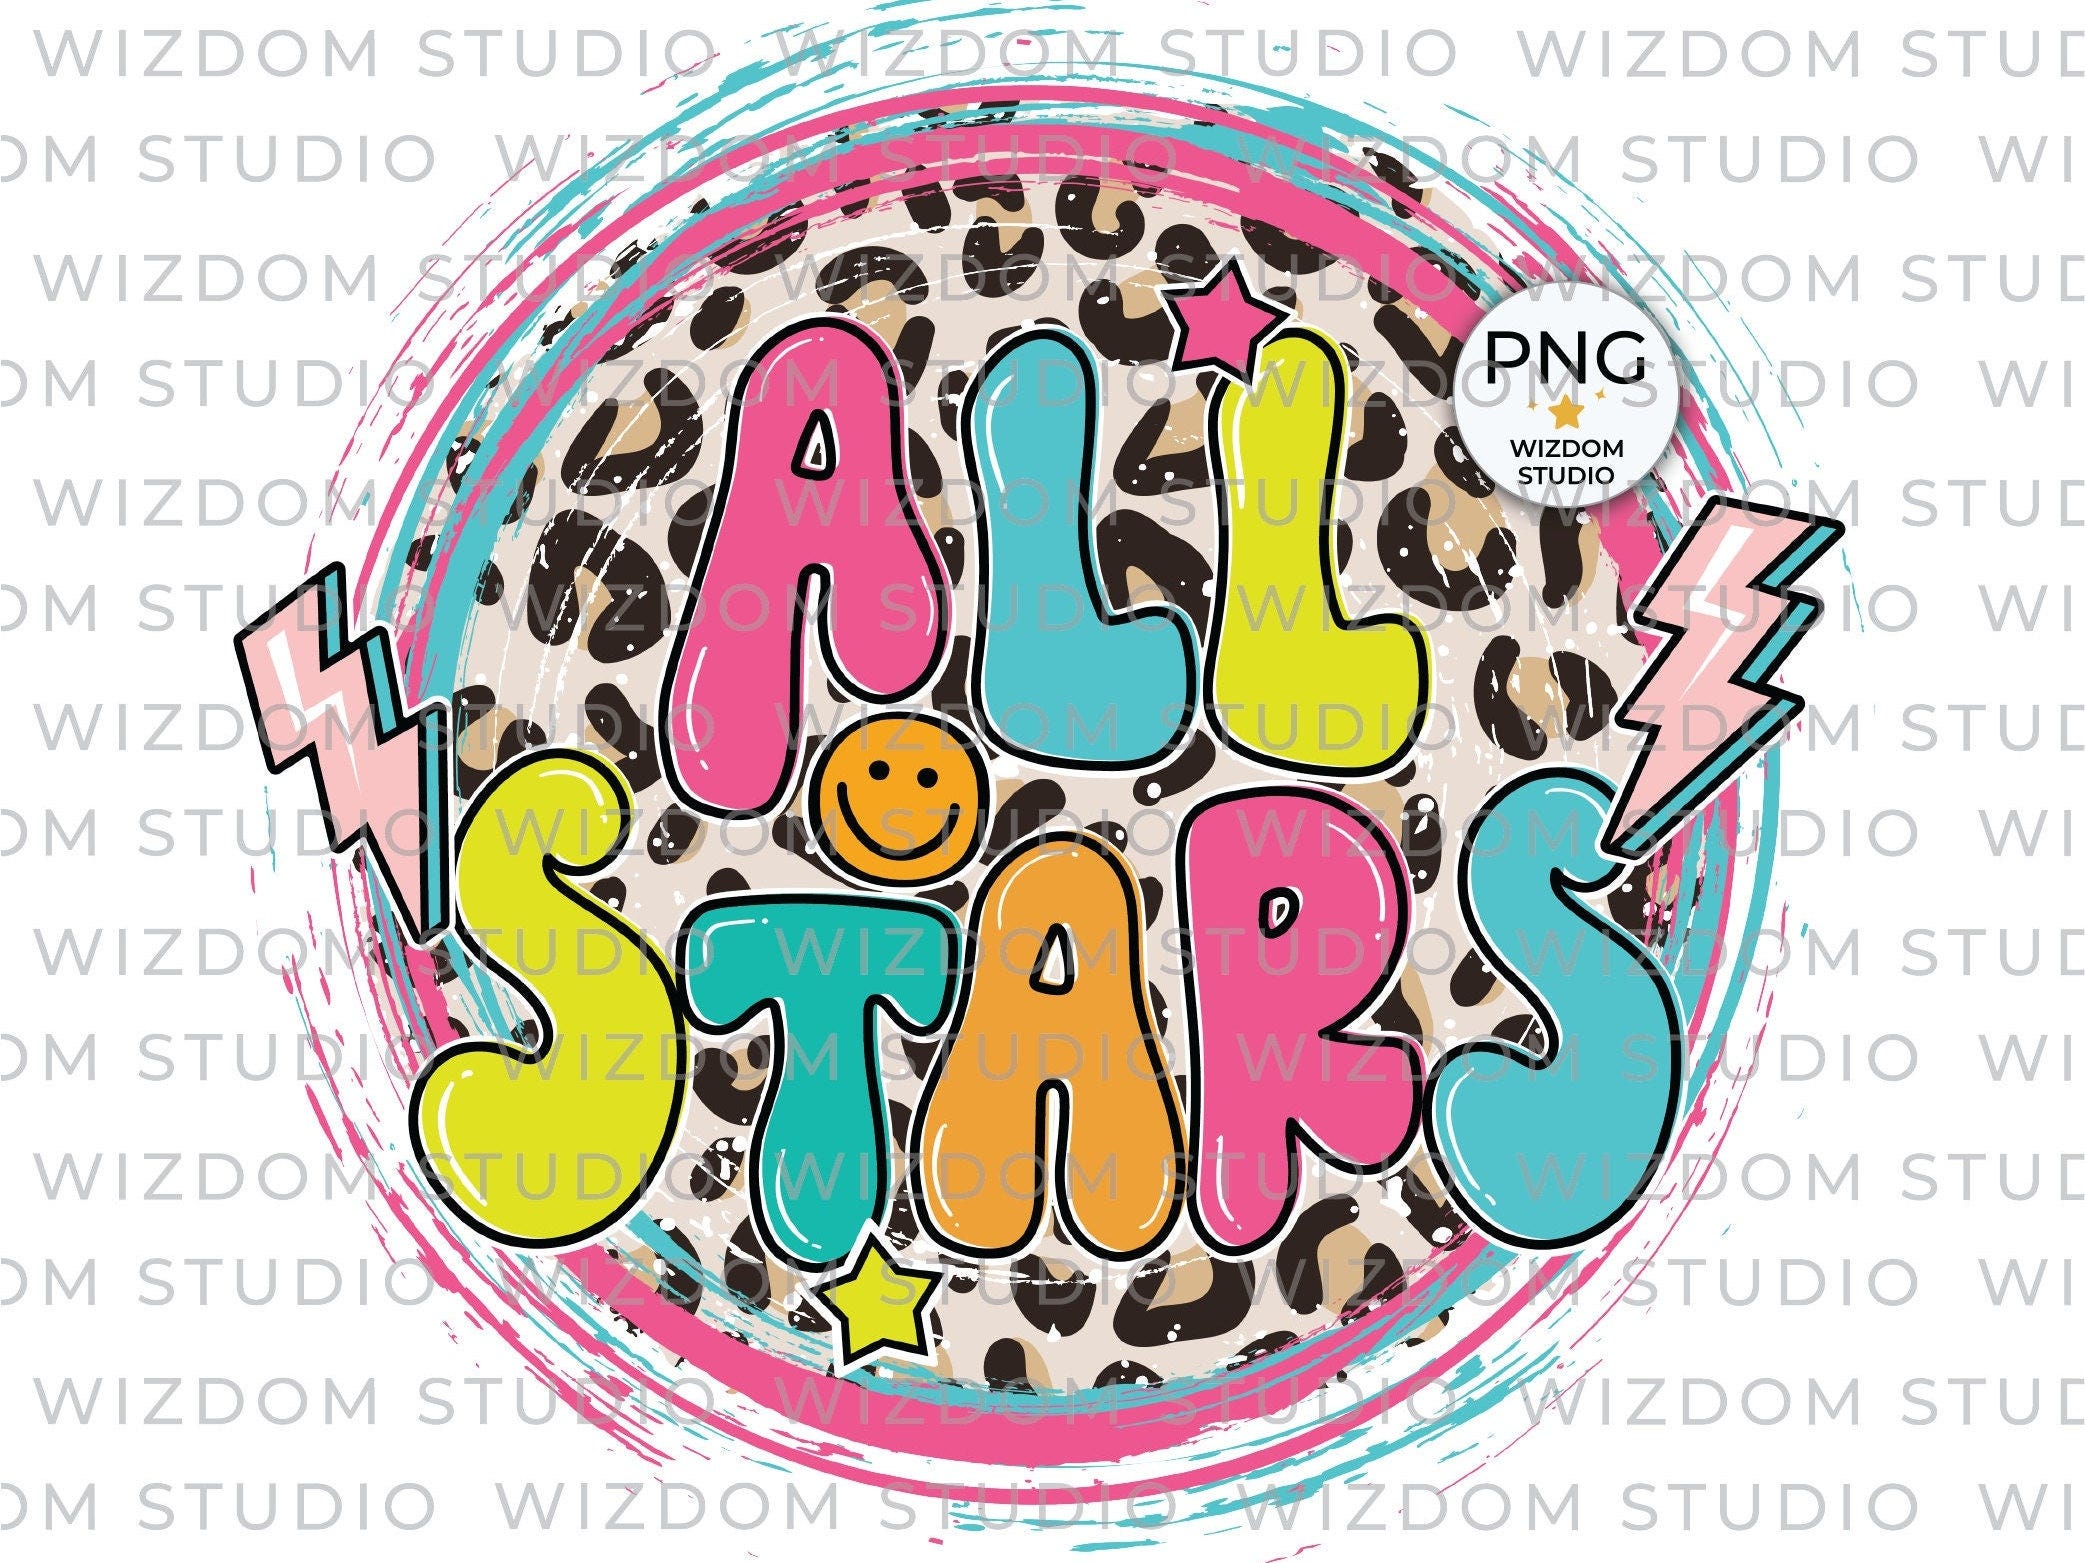 All Stars PNG Image, Leopard Lightning Bolt Design, Sublimation Designs Downloads, PNG File